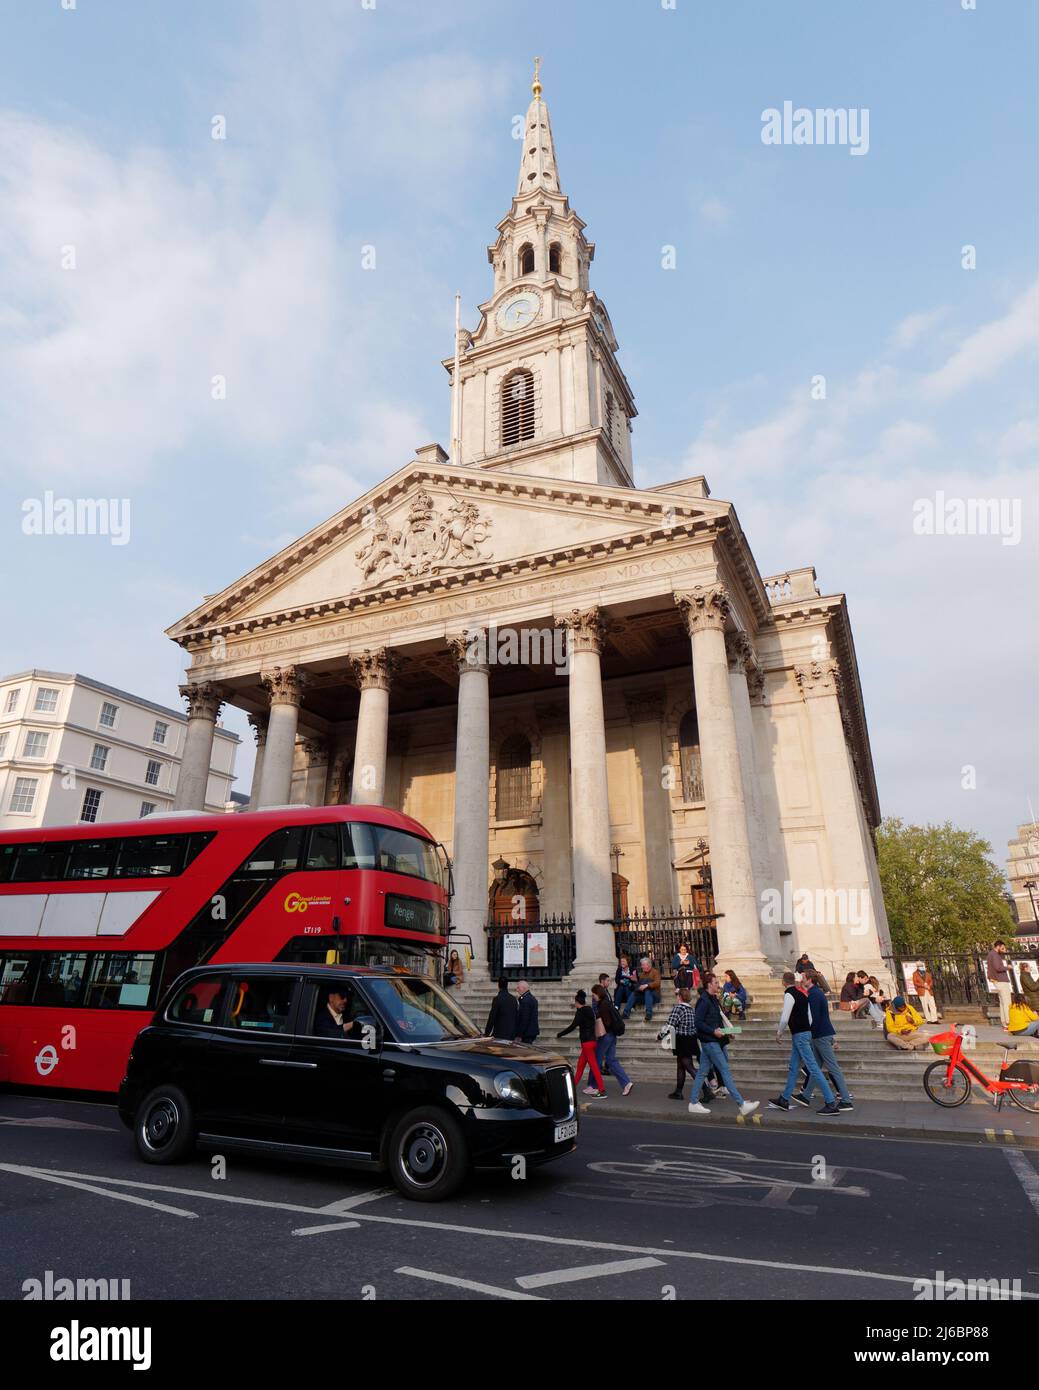 Londres, Grand Londres, Angleterre, avril 23 2022: Taxi et bus attendent dans la circulation à l'extérieur de St Martin dans l'église de champs comme les gens s'assoient sur les marches de l'église Banque D'Images